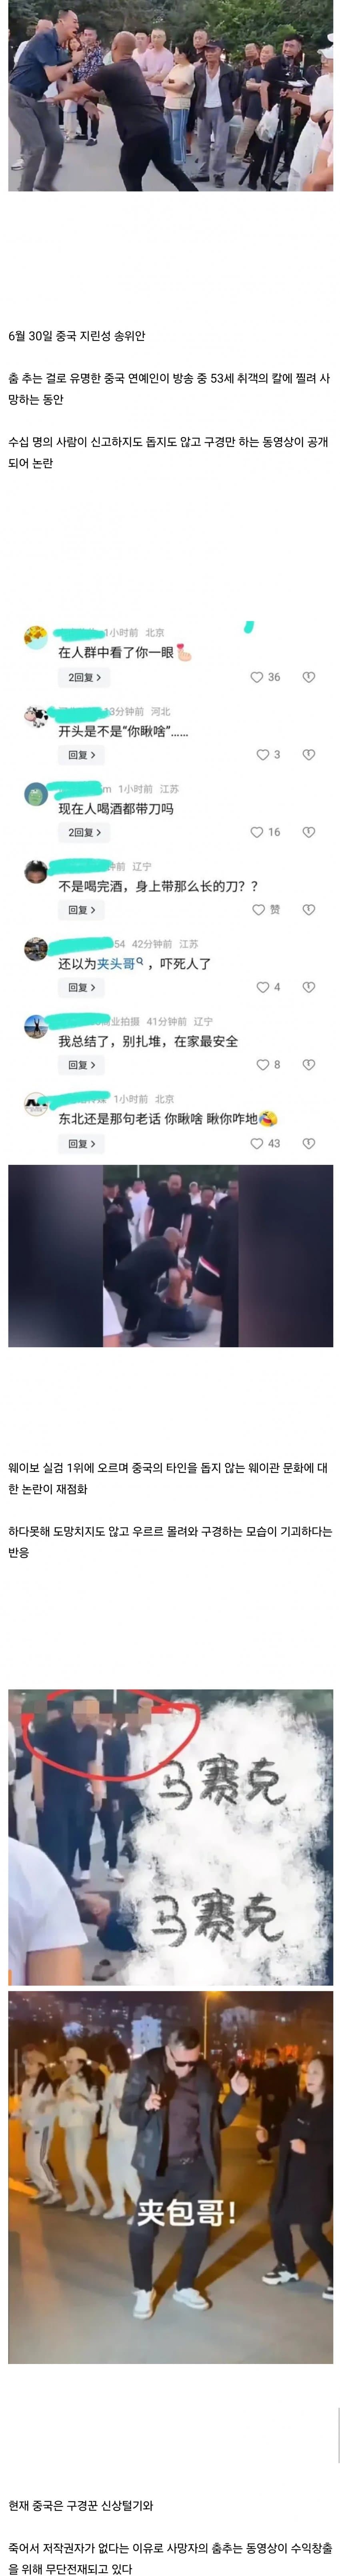 수십명의 구경꾼 앞에서 살해당한 중국 인플루언서.jpg